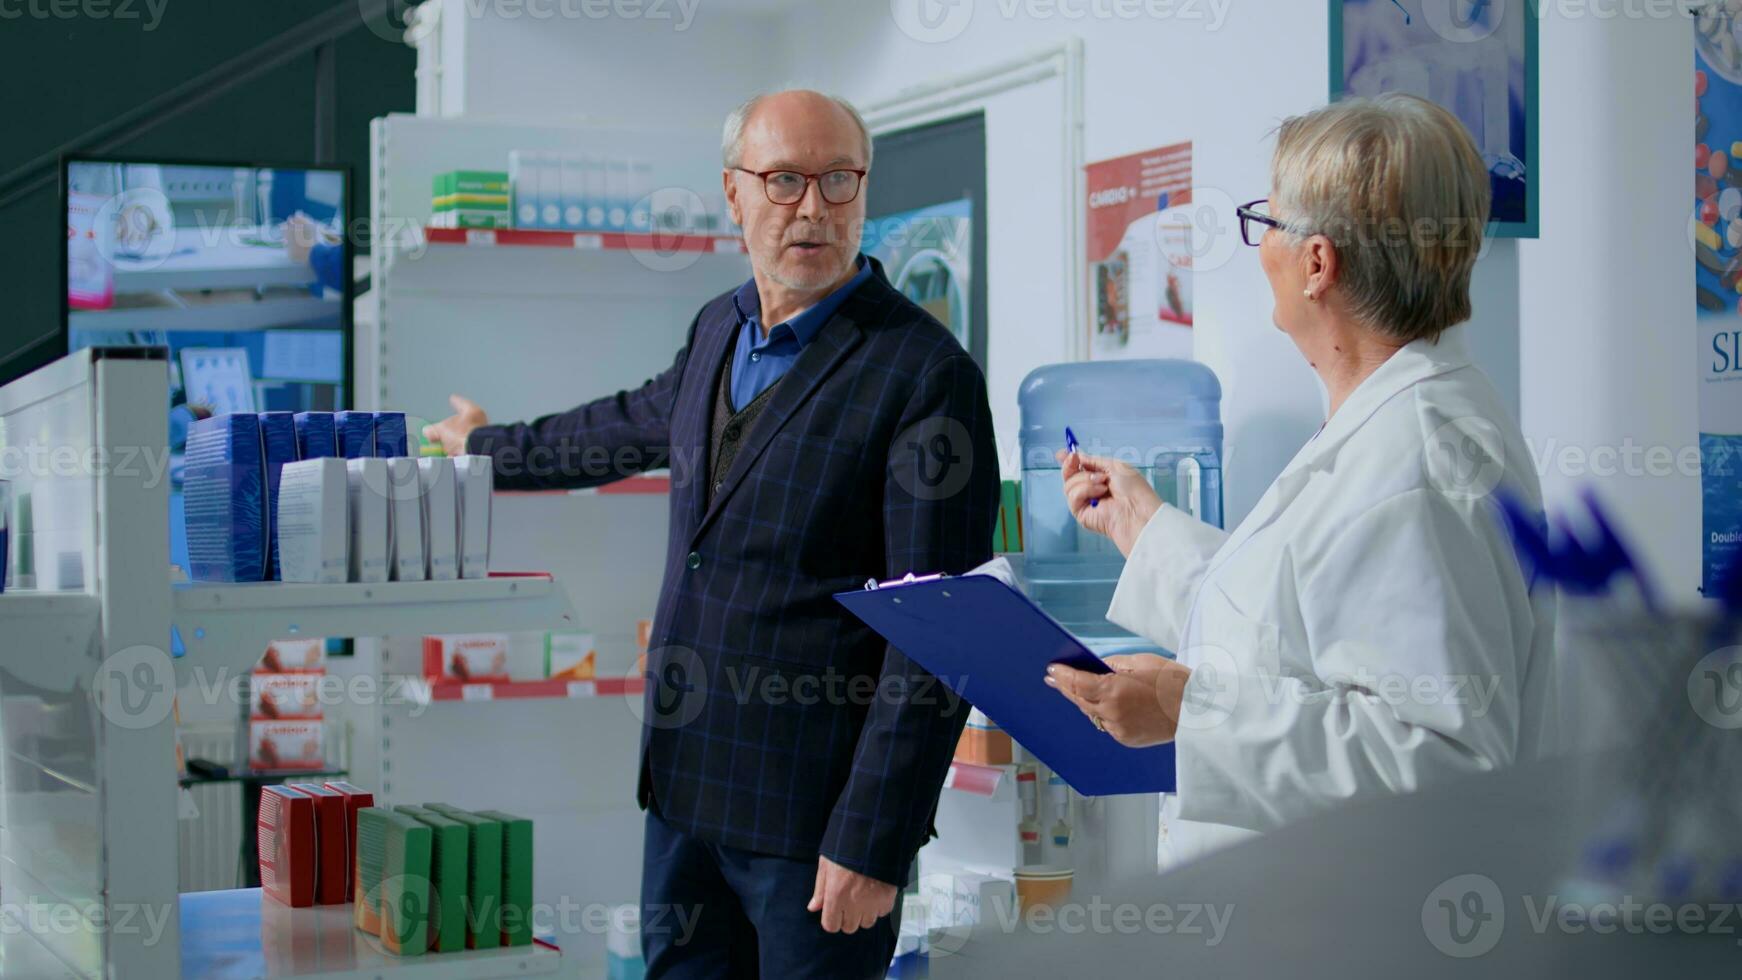 mayor hombre en farmacia mirando a digital publicidad en televisión pantalla, interesado en producto mostrado. servicial farmacéutico en boticario recomendando cliente ideal medicamento foto